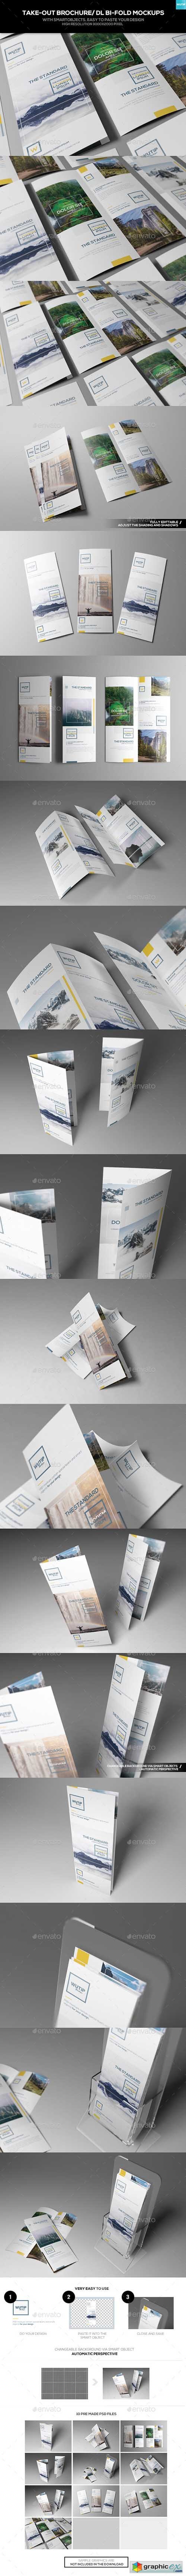 Take-out Brochure/ DL Bi-Fold Mockups